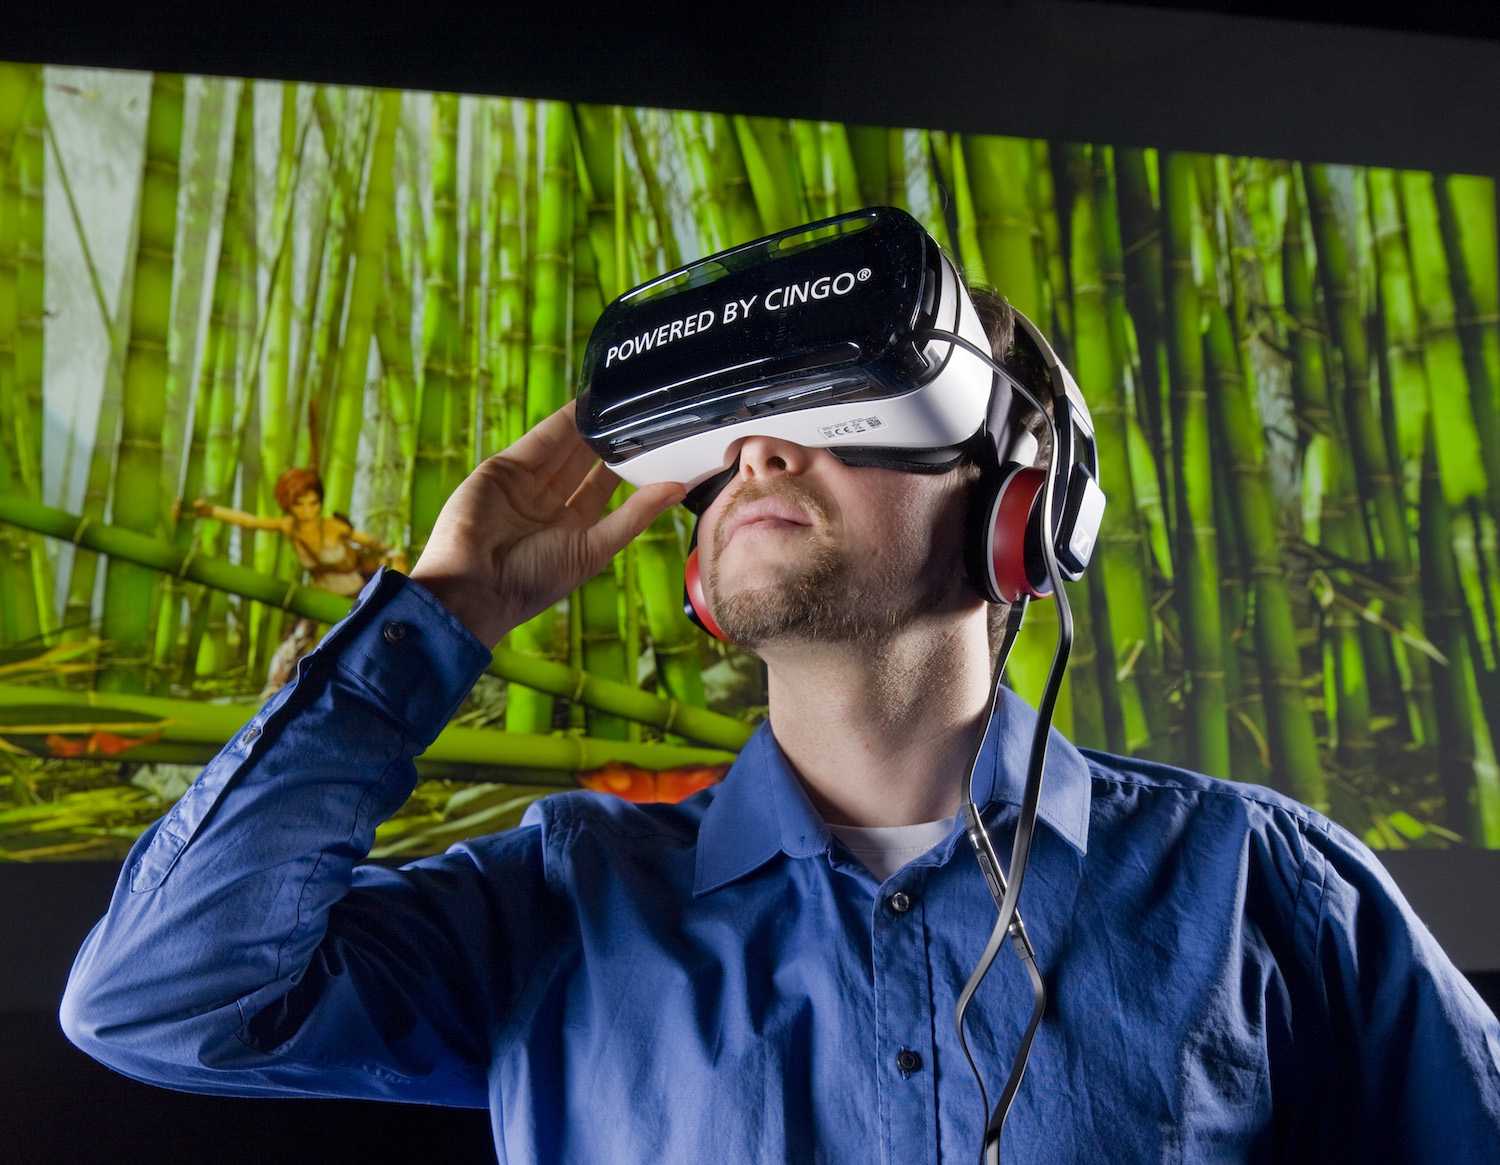 Свити фокс очки виртуальной реальности. VR виртуальная реальность. Виртуальная реальность без погружения. Человек в виртуальной реальности. Очки виртуальной реальности на человеке.